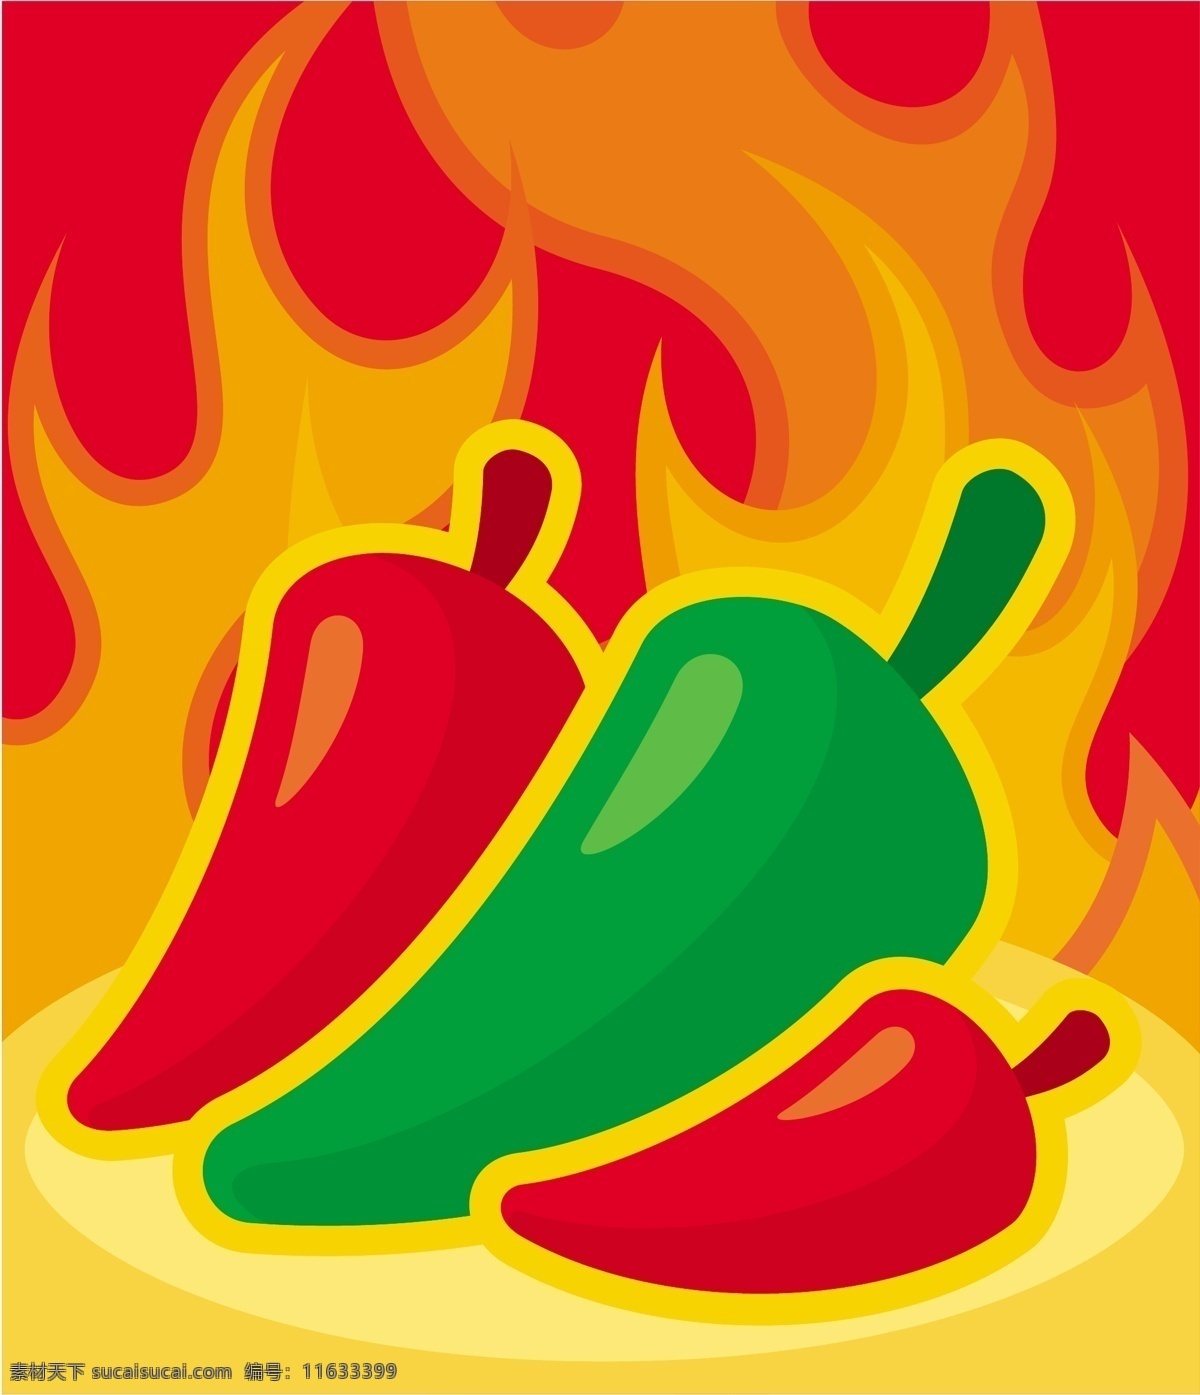 辣椒 火焰 背景 矢量 红辣椒 燃烧 蔬菜 帅哥美女 水果和蔬菜 绿辣椒